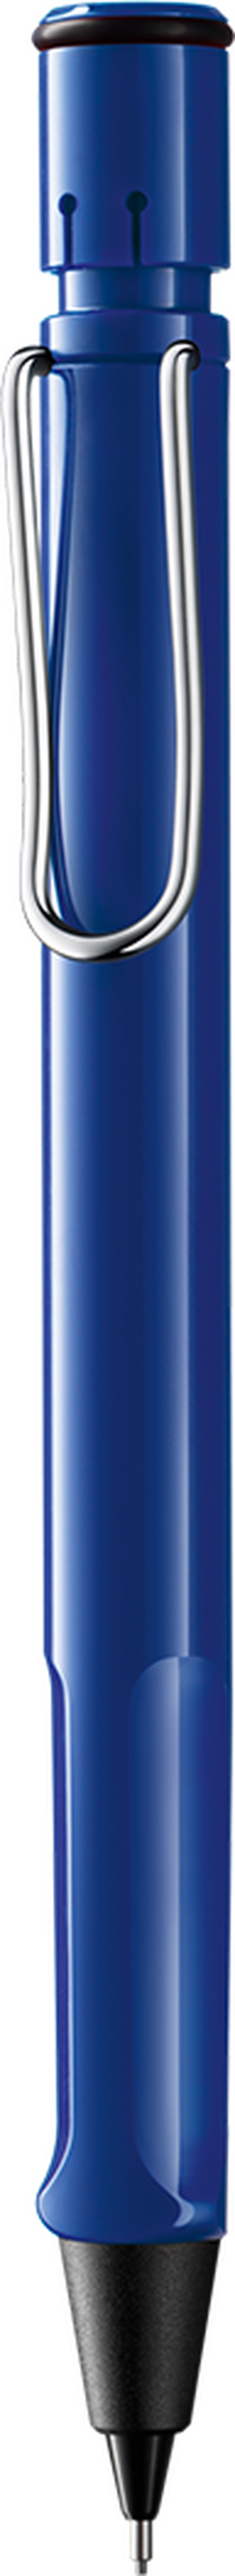 Druckbleistift LAMY safari blue HB 0,5 mm